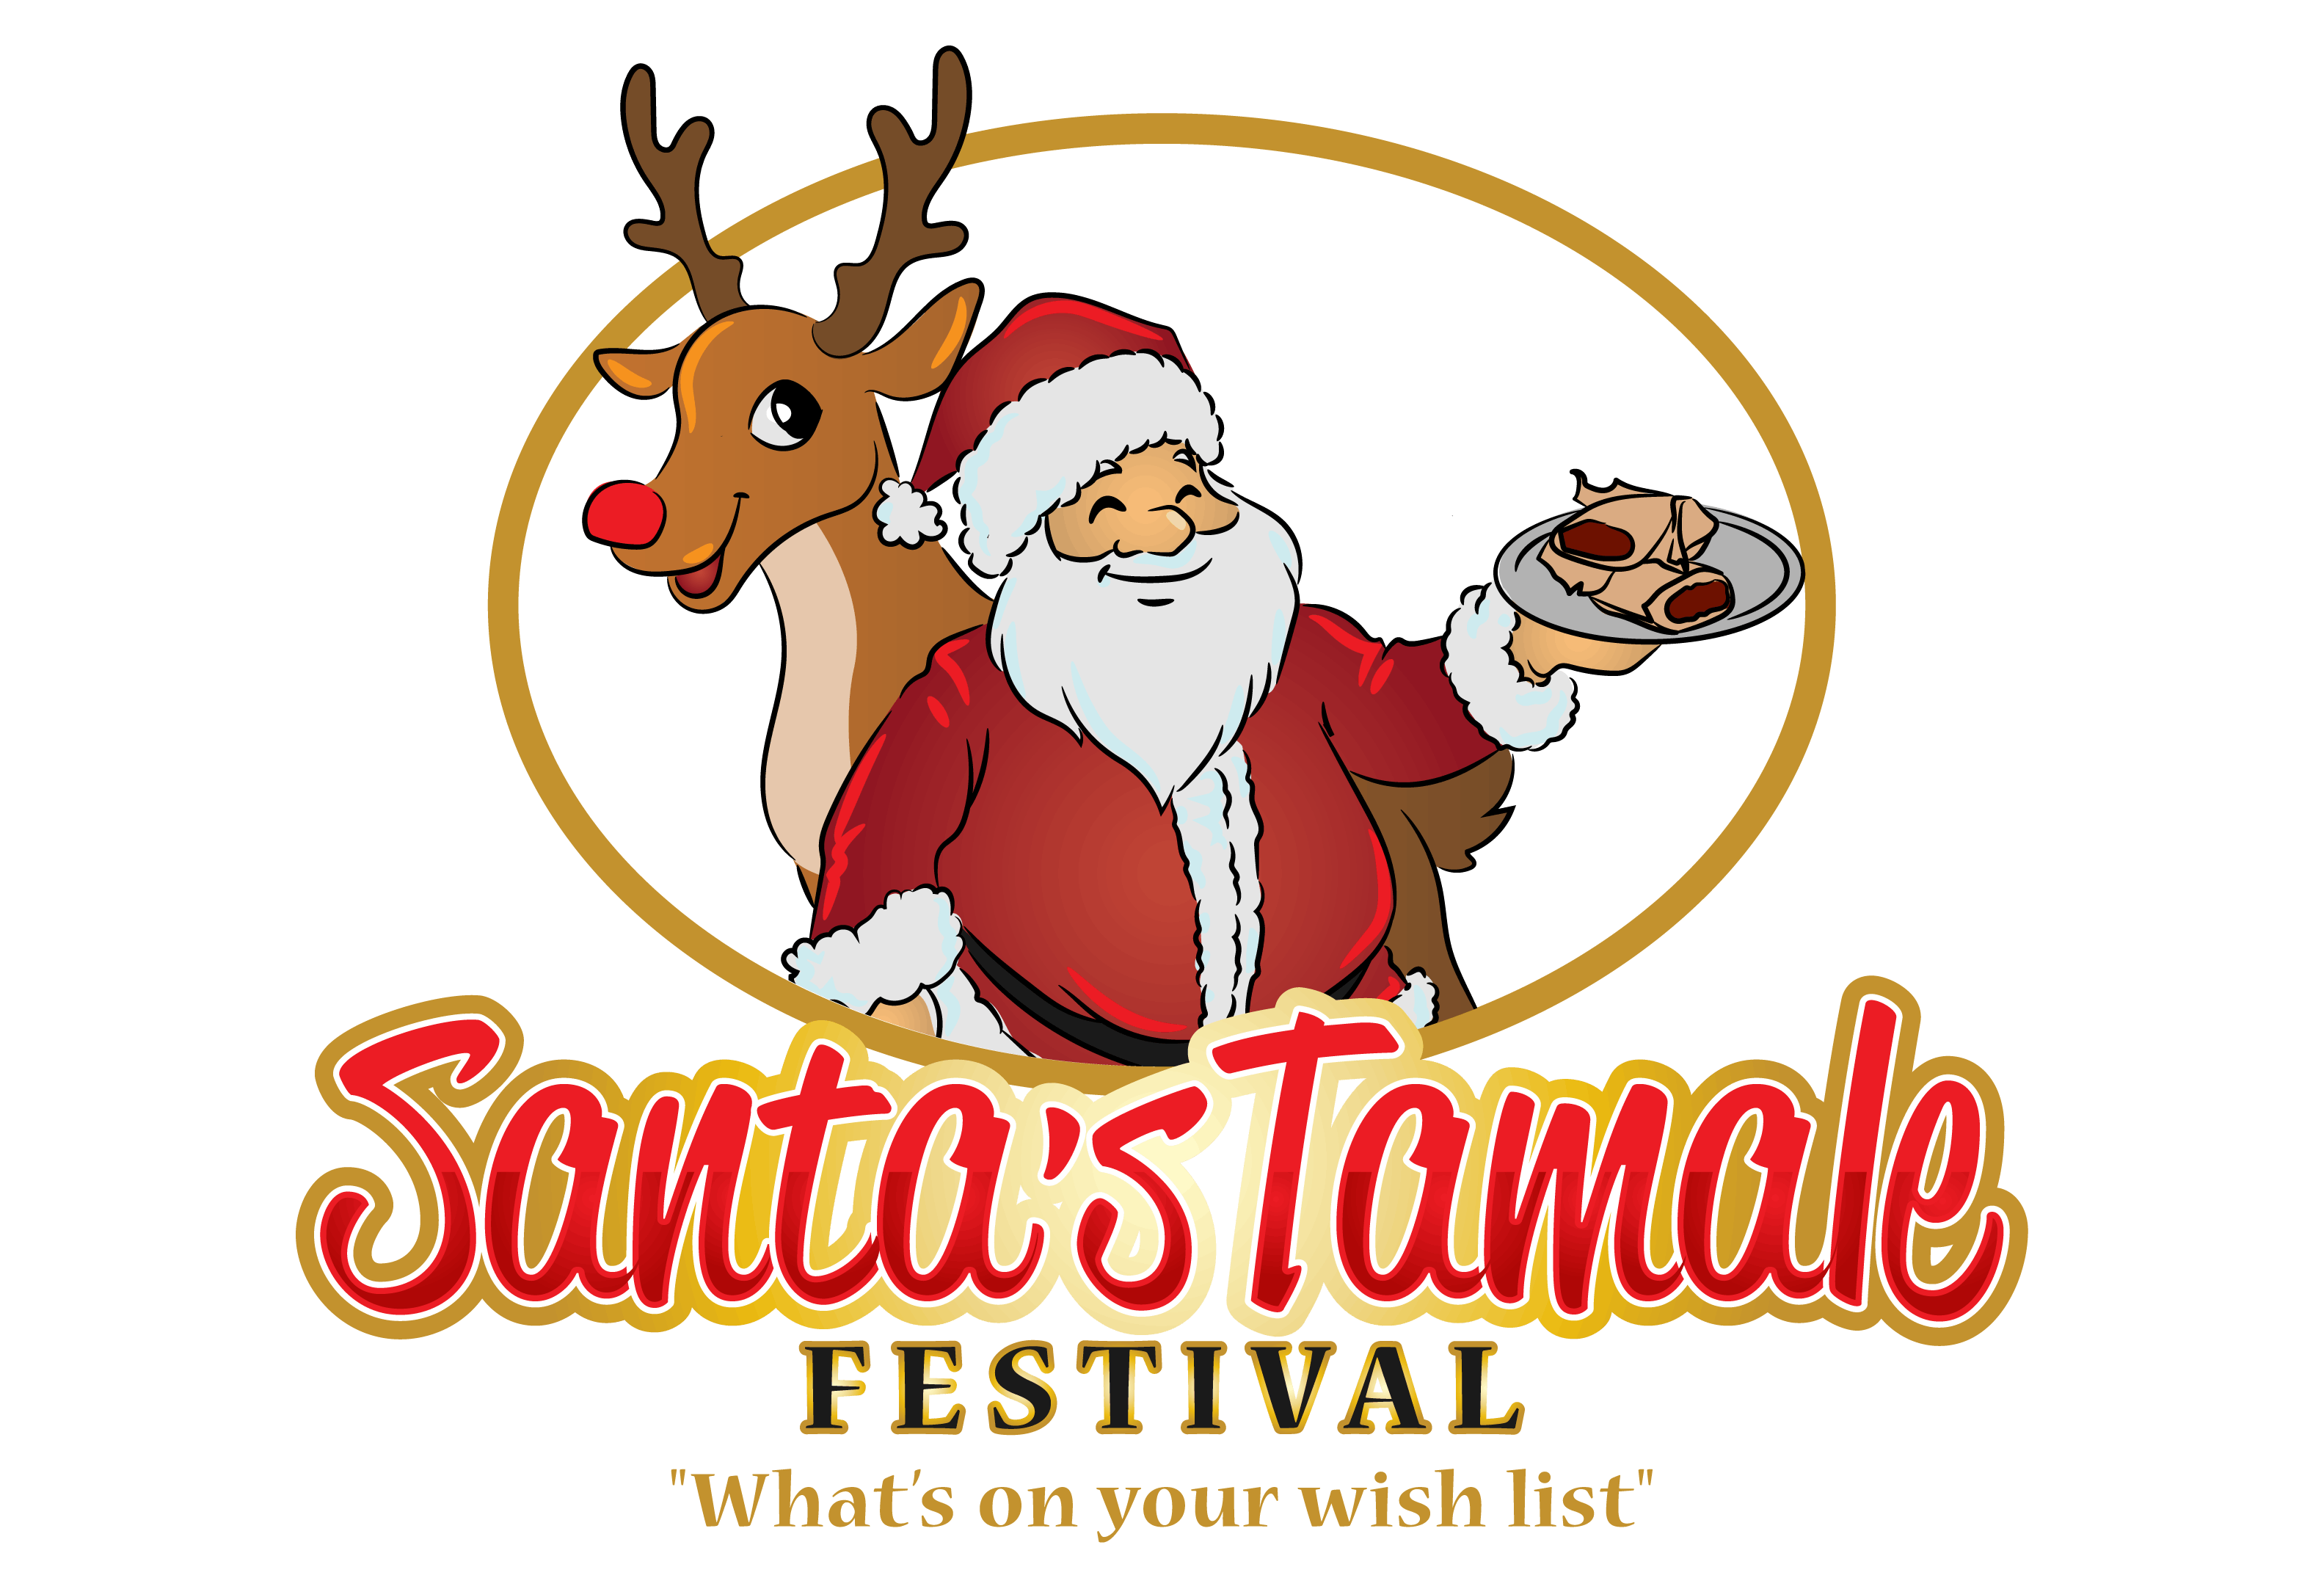 Santa's Tamale Festival